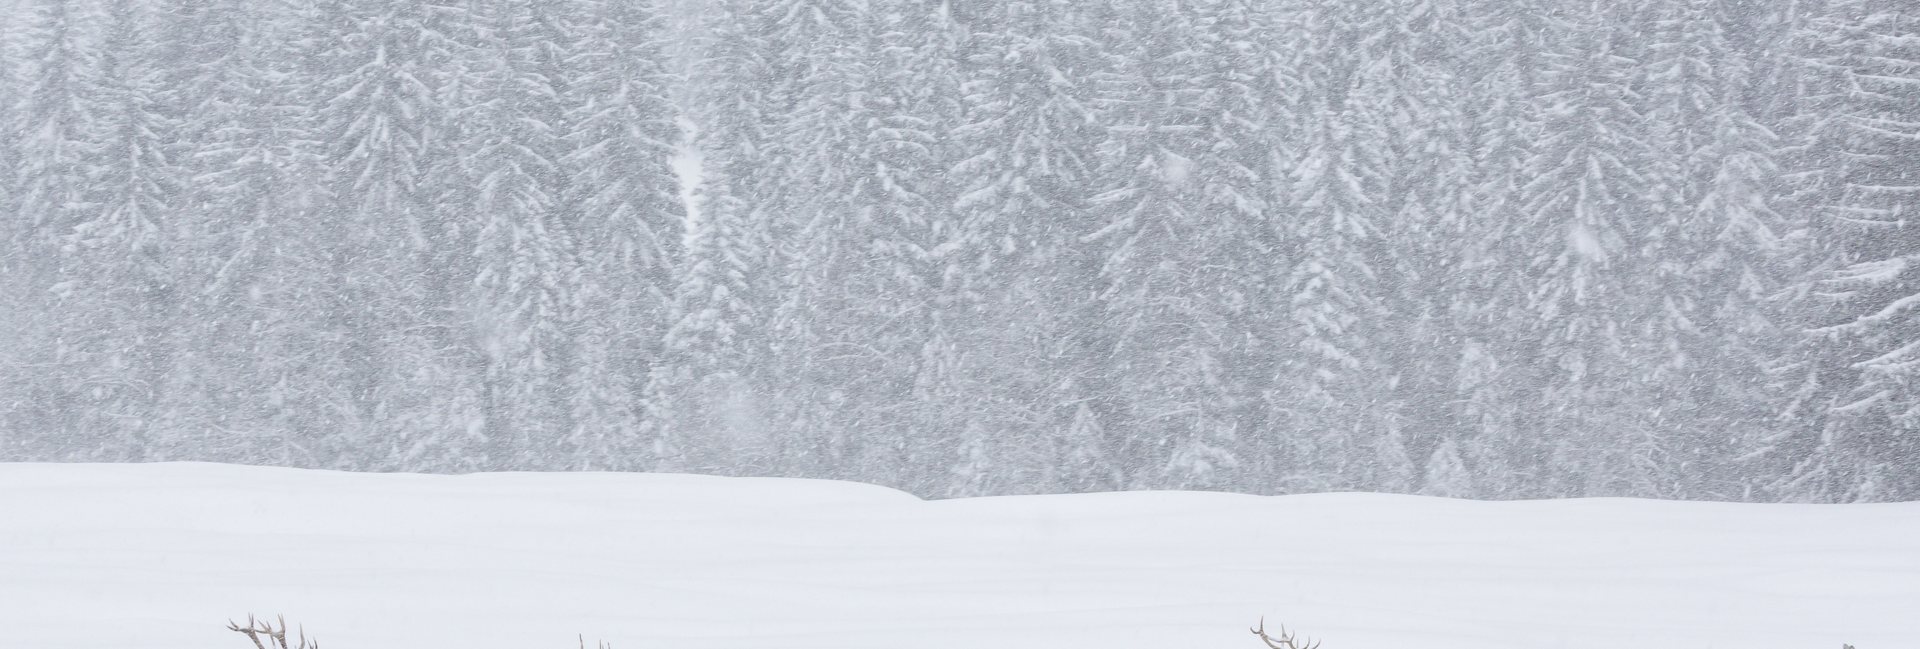 Animali selvatici durante una tempesta di neve nei parchi naturali del Trentino